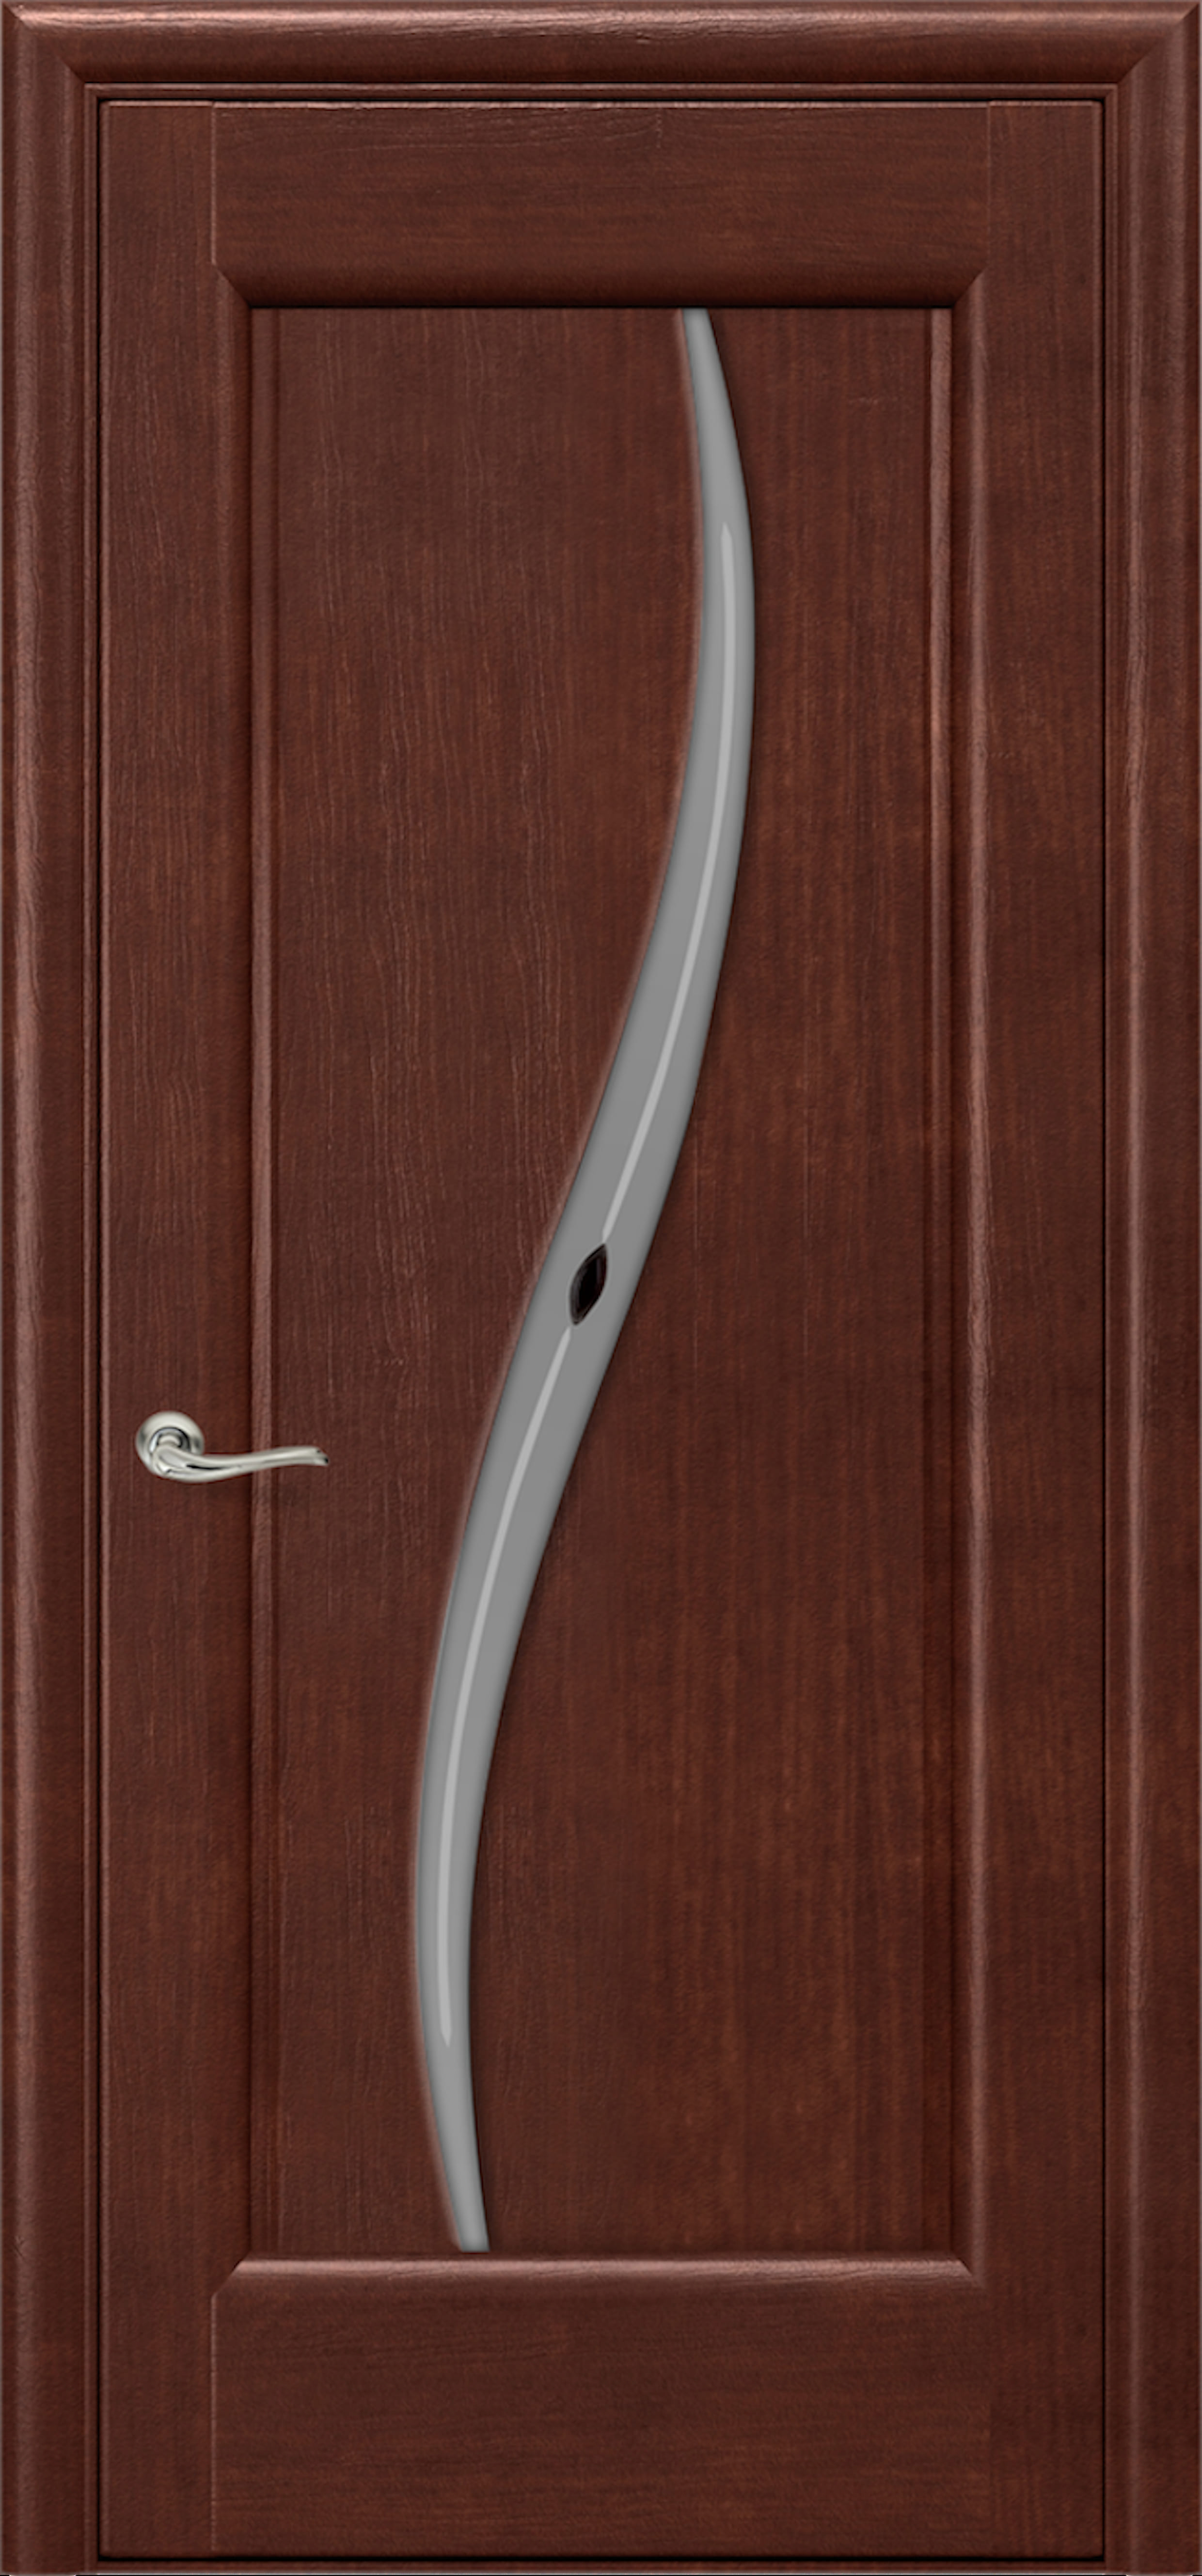 Дверь межкомнатная шпонированная (шпон натуральный) Силуэт миланский орех остеклённая (сатинат с рисунком АП-32)